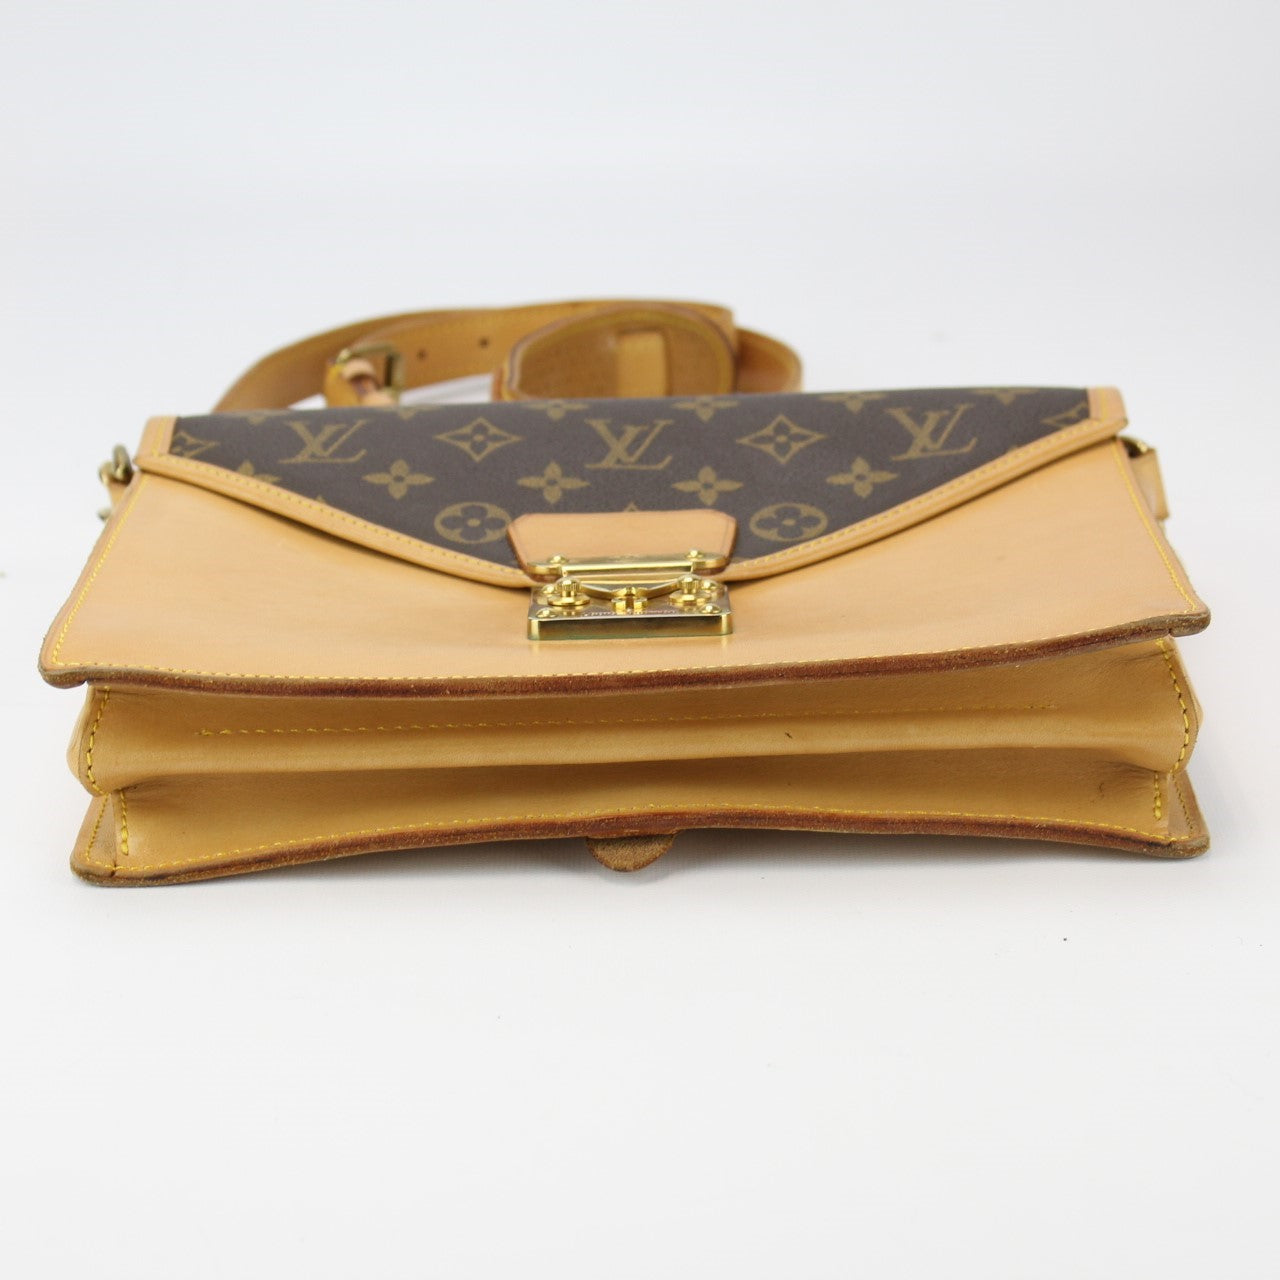 Vintage Louis Vuitton Sac Biface monogram Bag